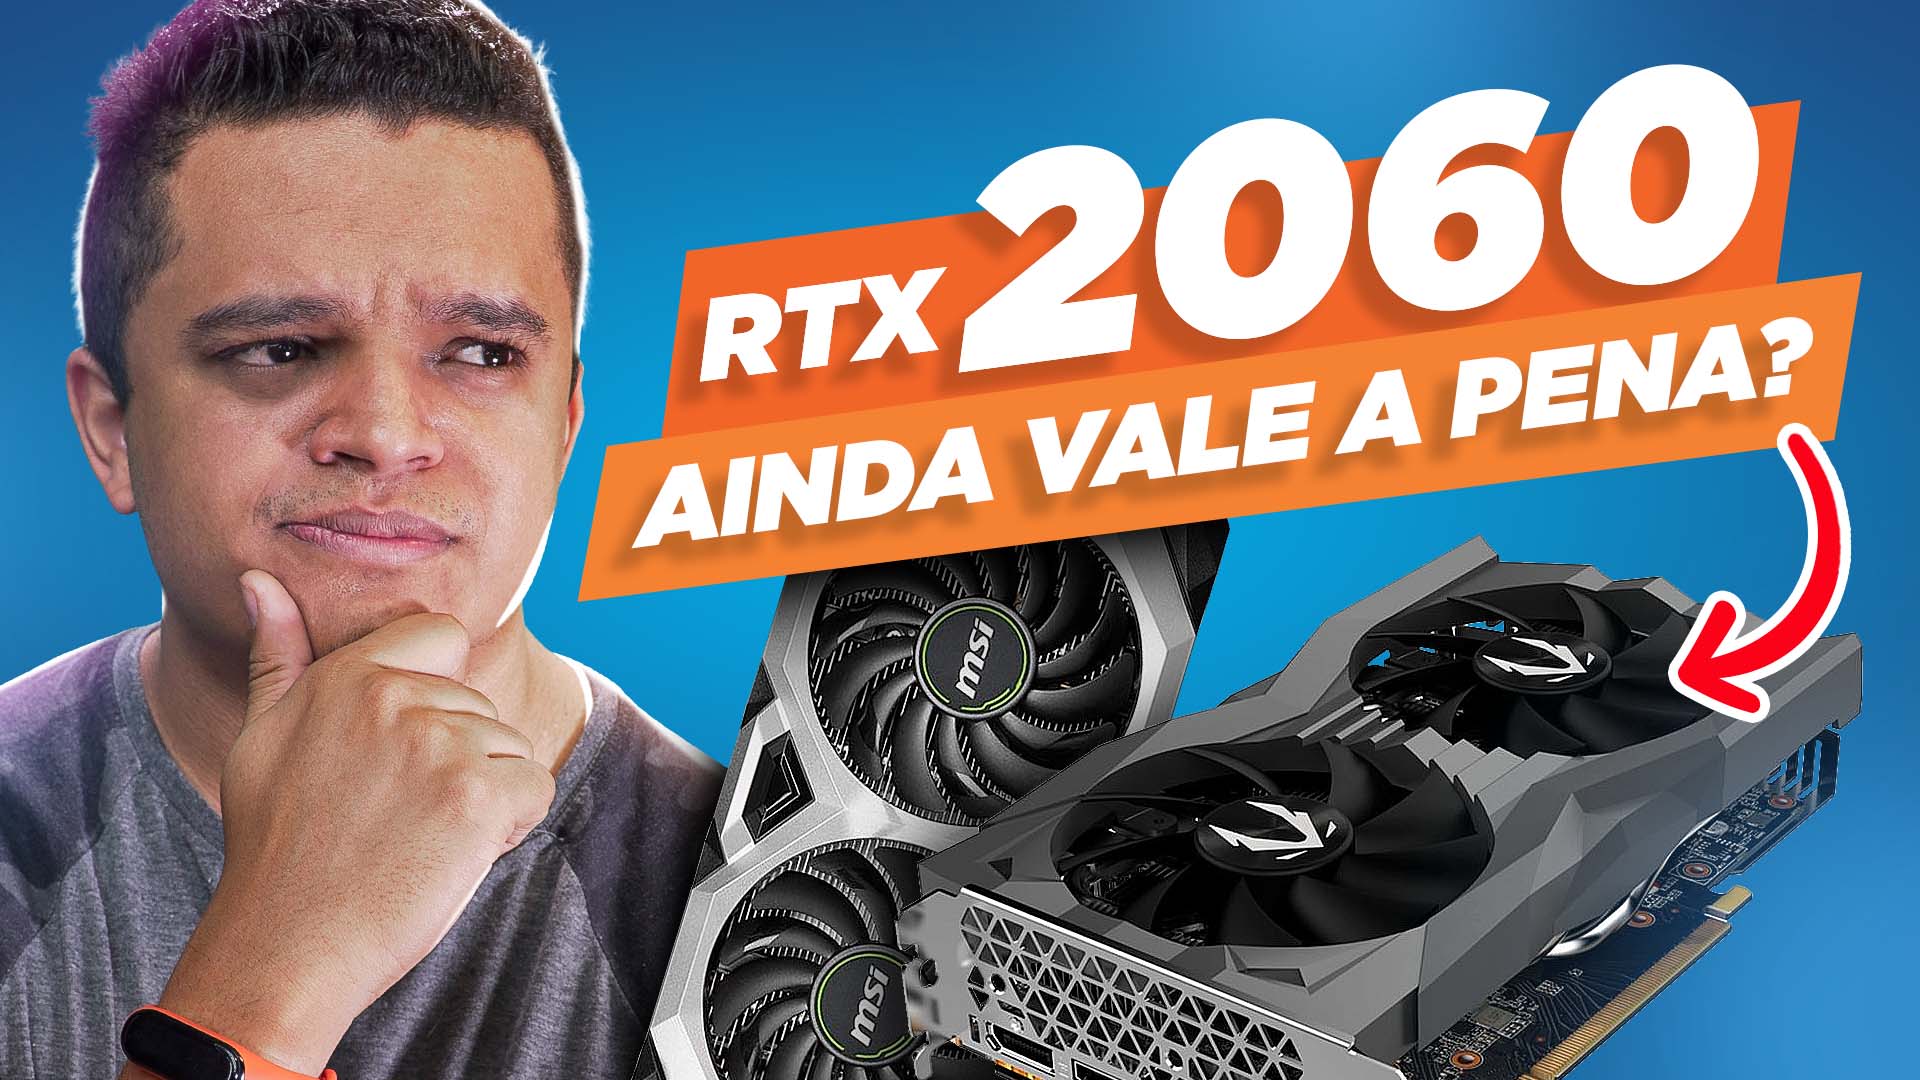 RTX 2060 EM 2022 AINDA VALE A PENA?